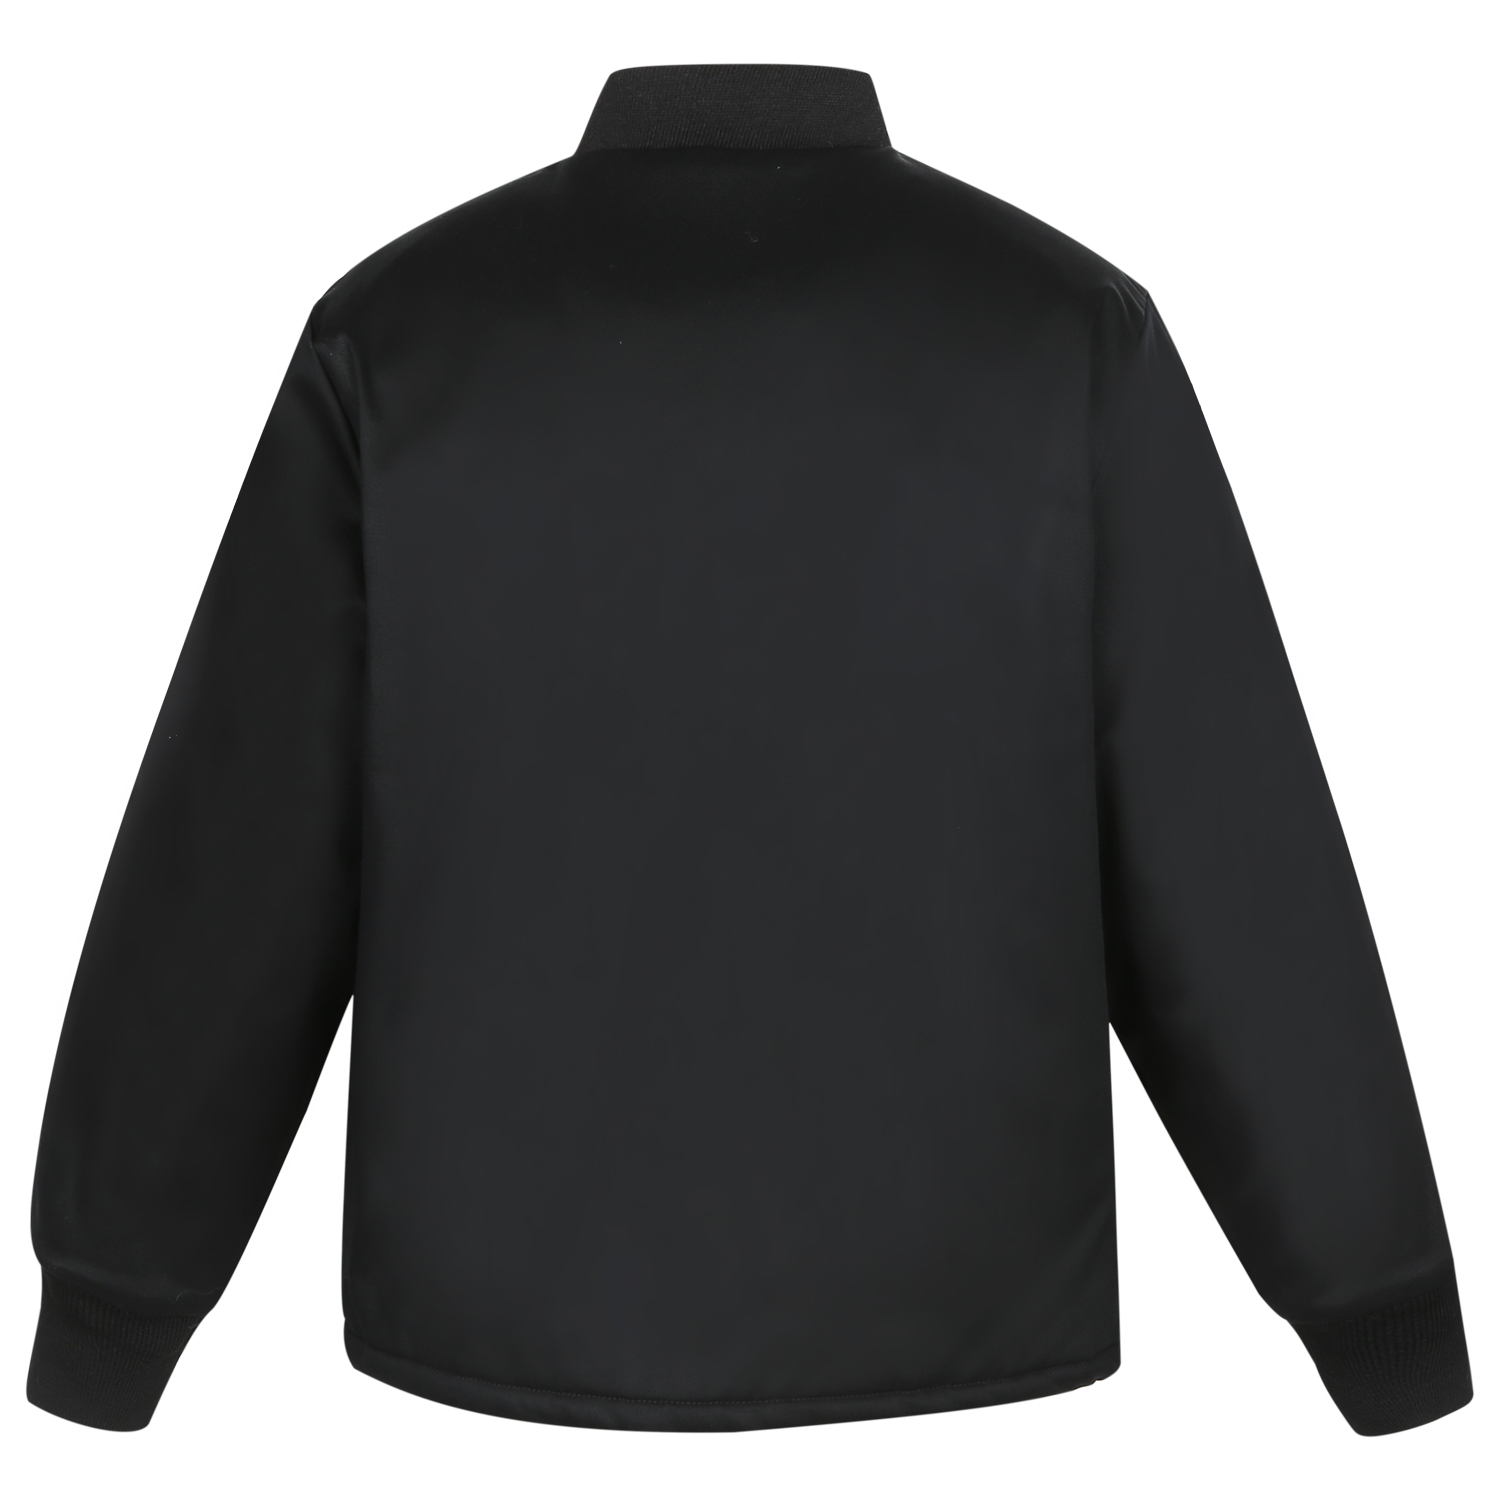 FR 2-in-1 Zip In Jacket Liner – Phenix FR